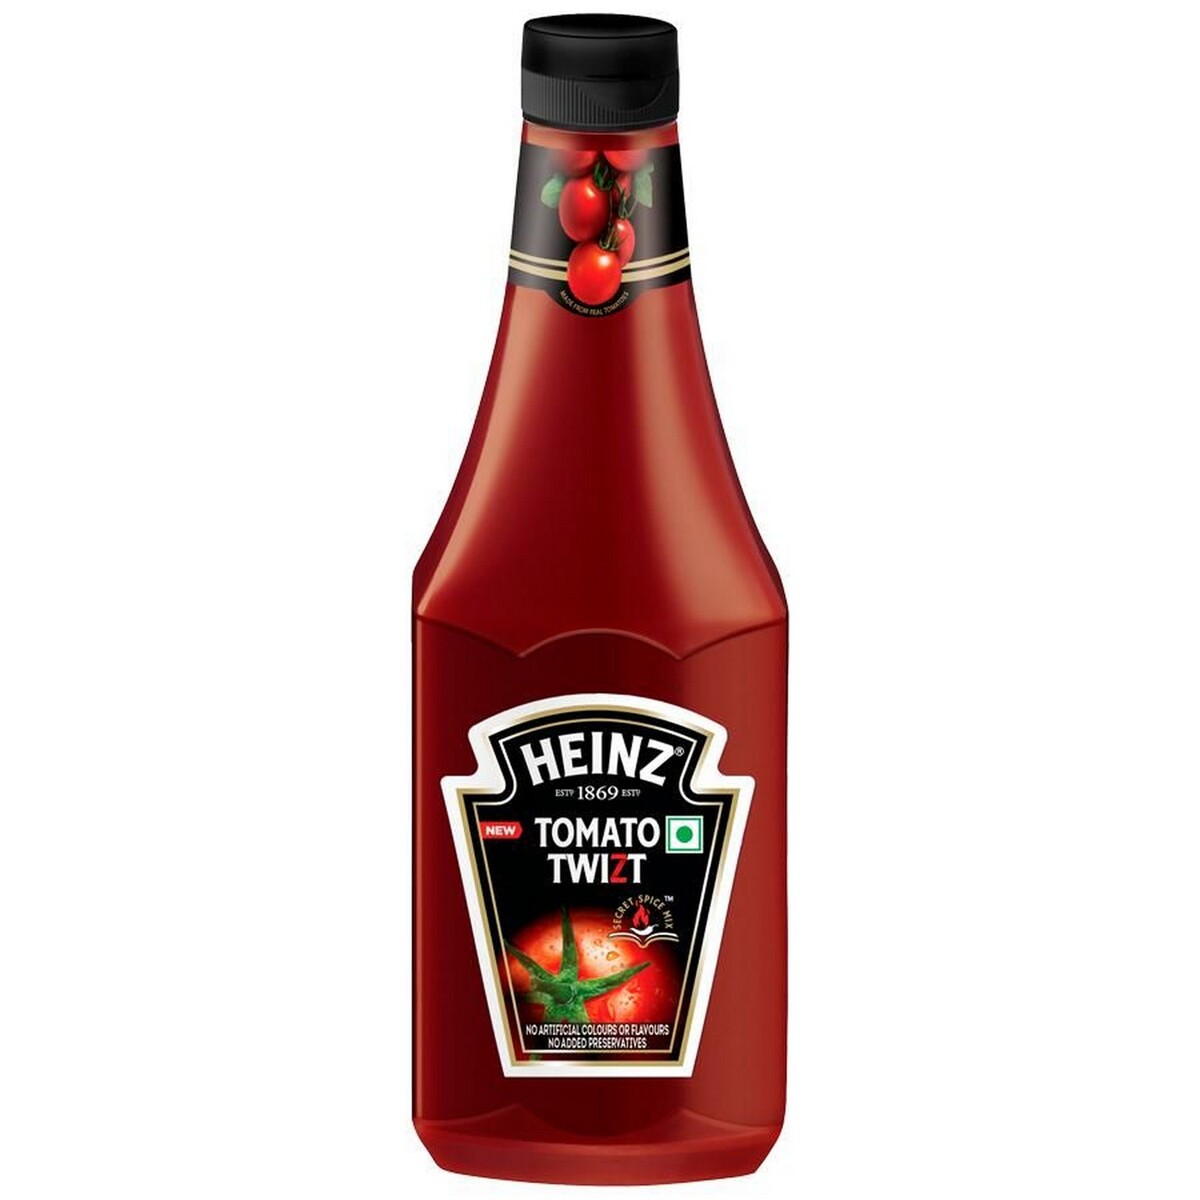 Heinz Tomato Twizt 435g